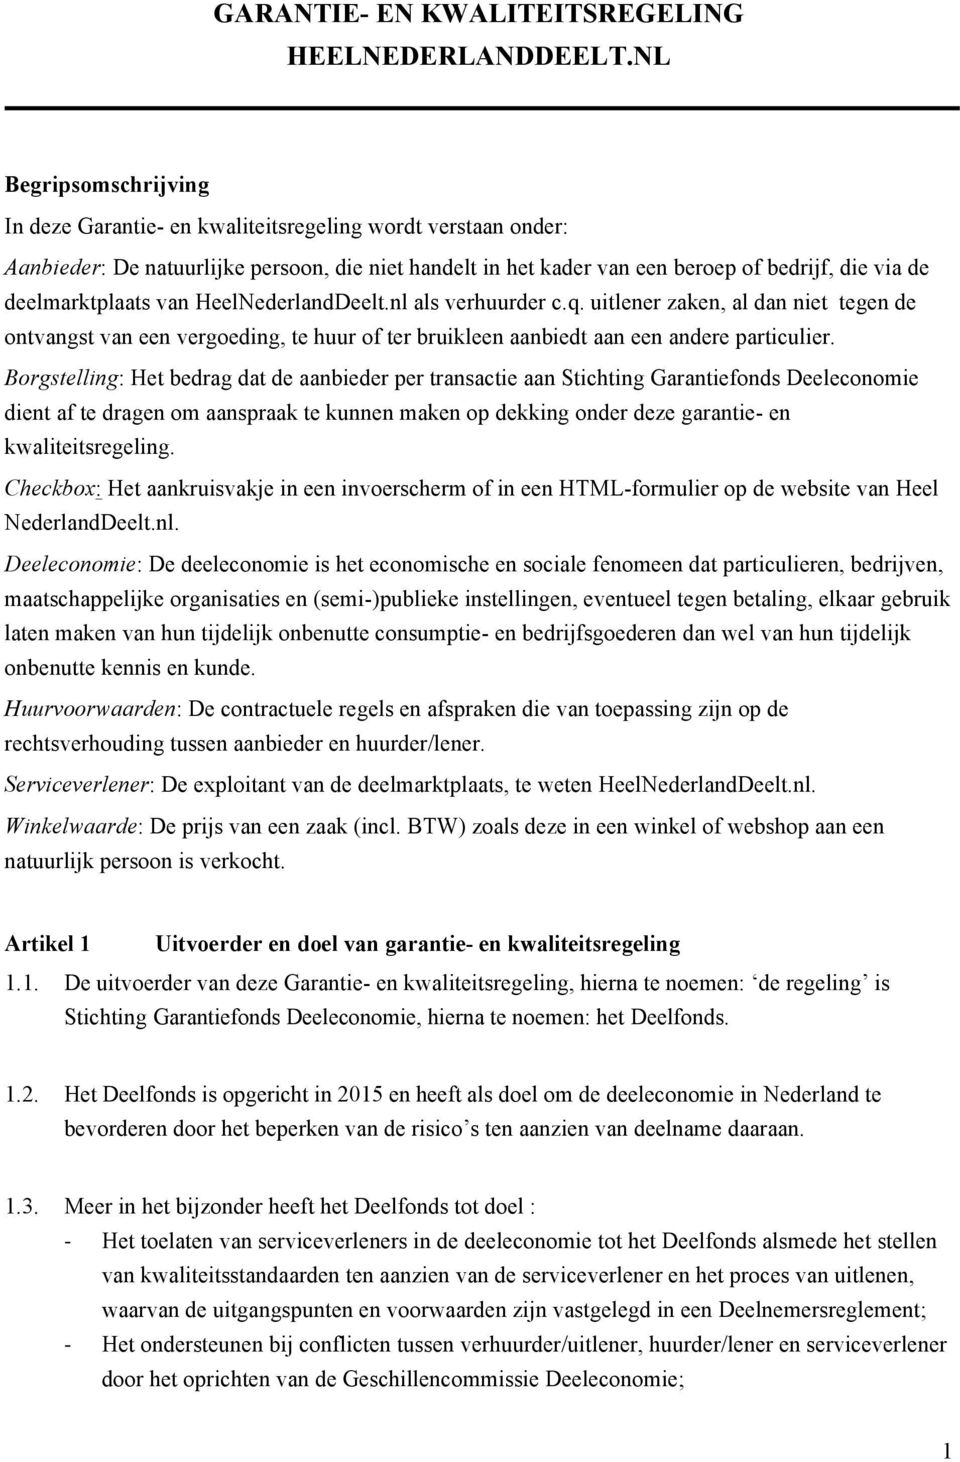 deelmarktplaats van HeelNederlandDeelt.nl als verhuurder c.q. uitlener zaken, al dan niet tegen de ontvangst van een vergoeding, te huur of ter bruikleen aanbiedt aan een andere particulier.